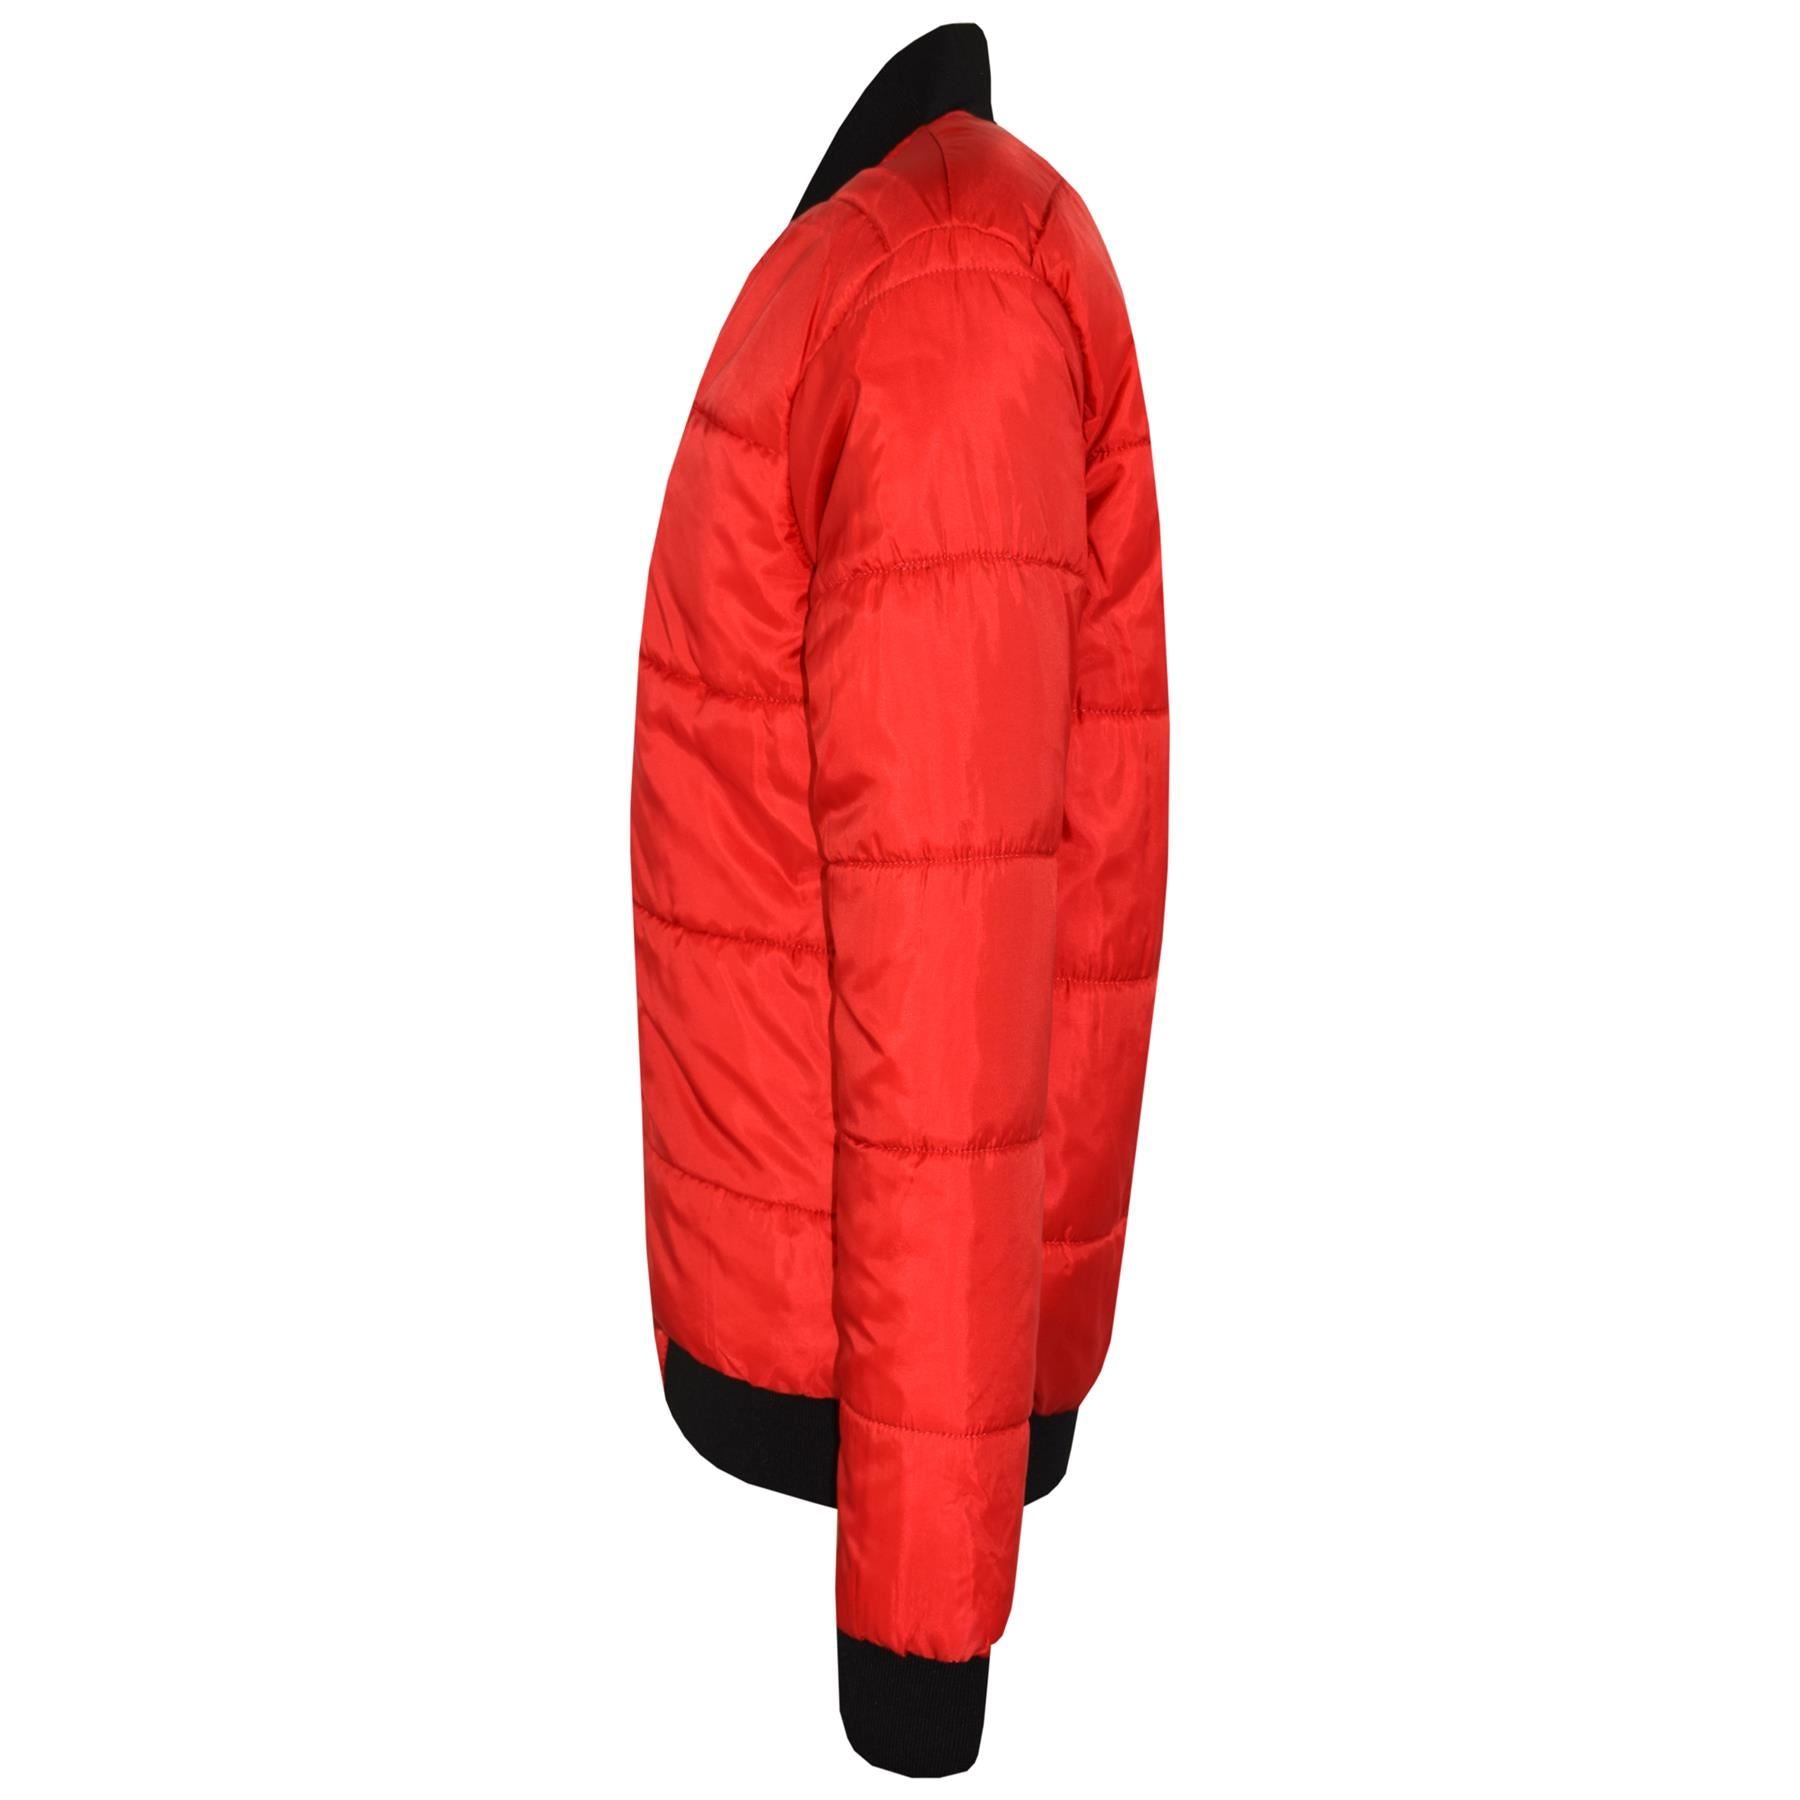 Kids Bomber Red Jacket For Girls Boys Lightweight Puffer Coat